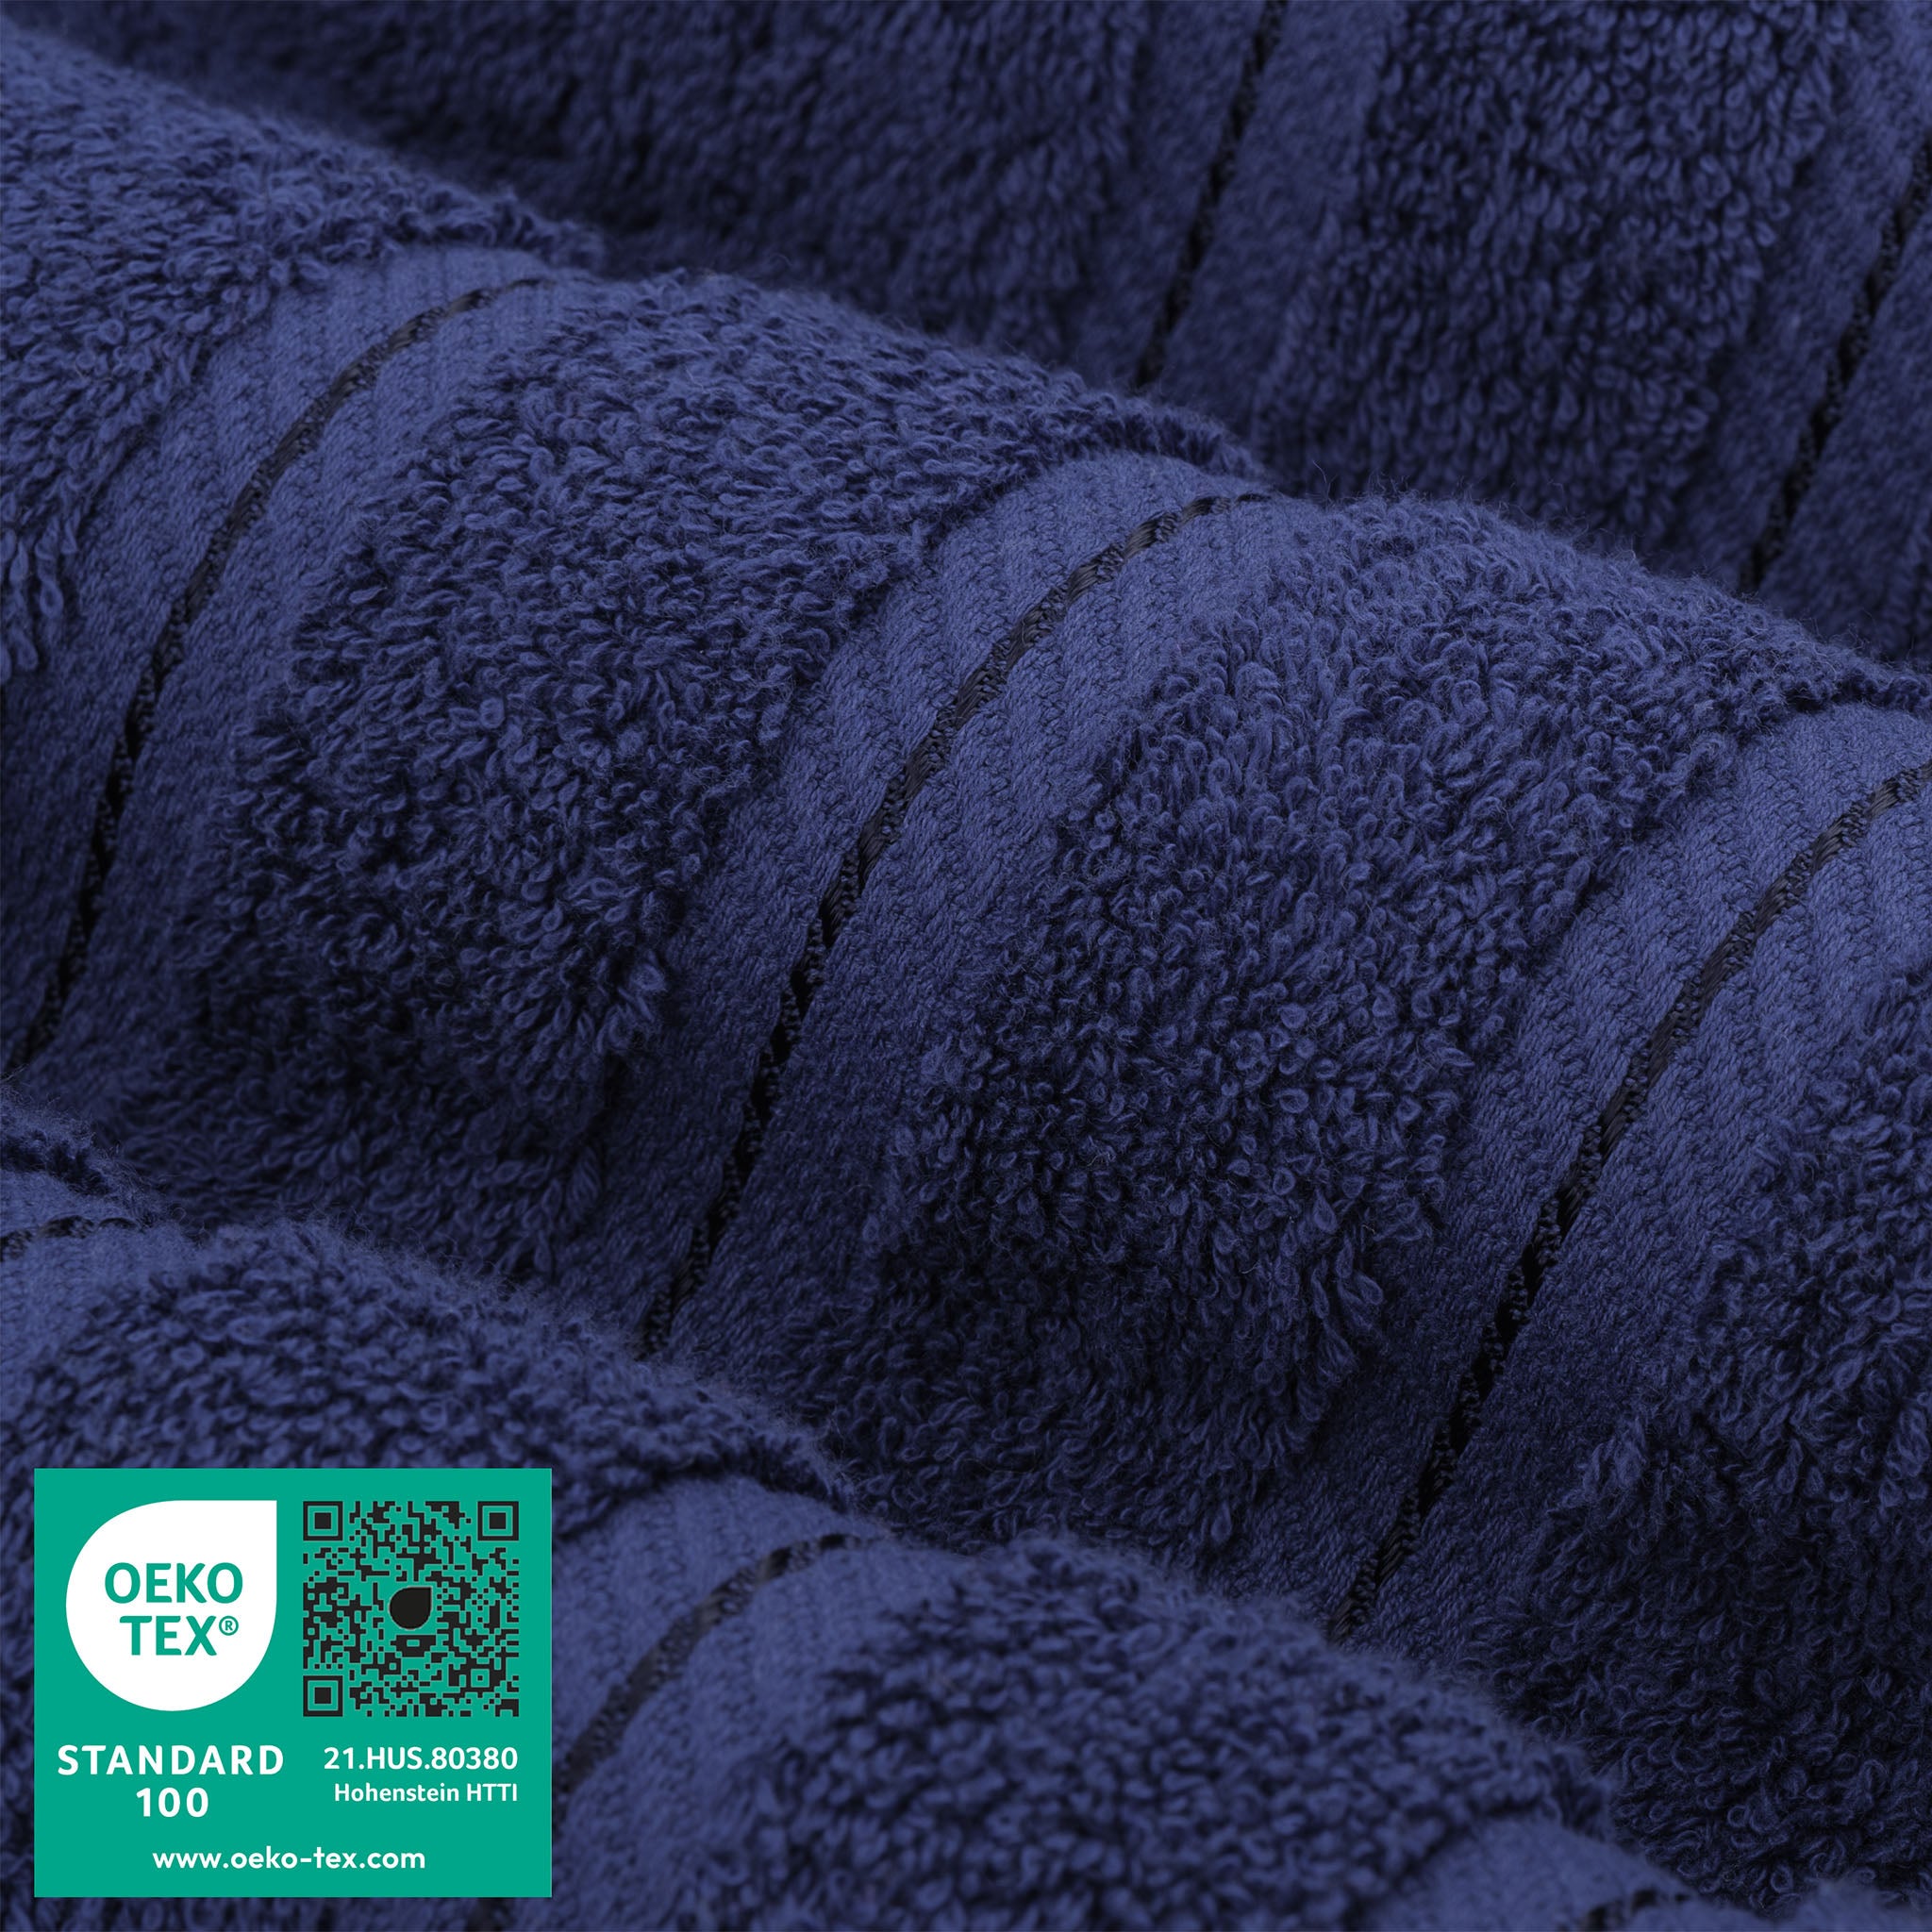 American Soft Linen 100% Turkish Cotton 4 Pack Bath Towel Set Wholesale navy-blue-3